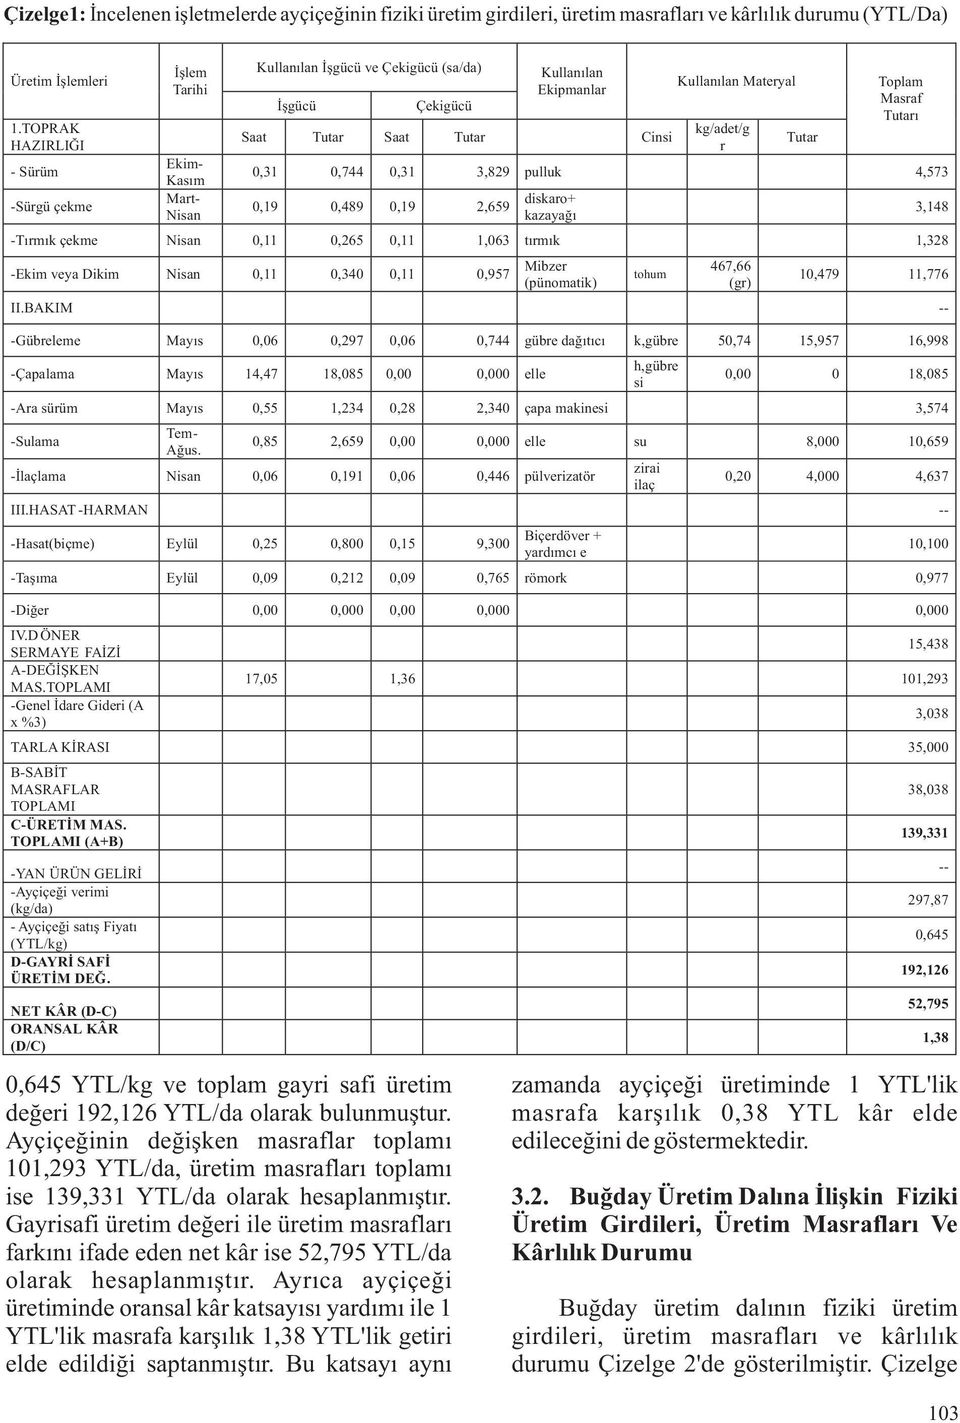 Ayçiçeğinin değişken masraflar toplamı 101,293 YTL/da, üretim masrafları toplamı ise 139,331 YTL/da olarak hesaplanmıştır.